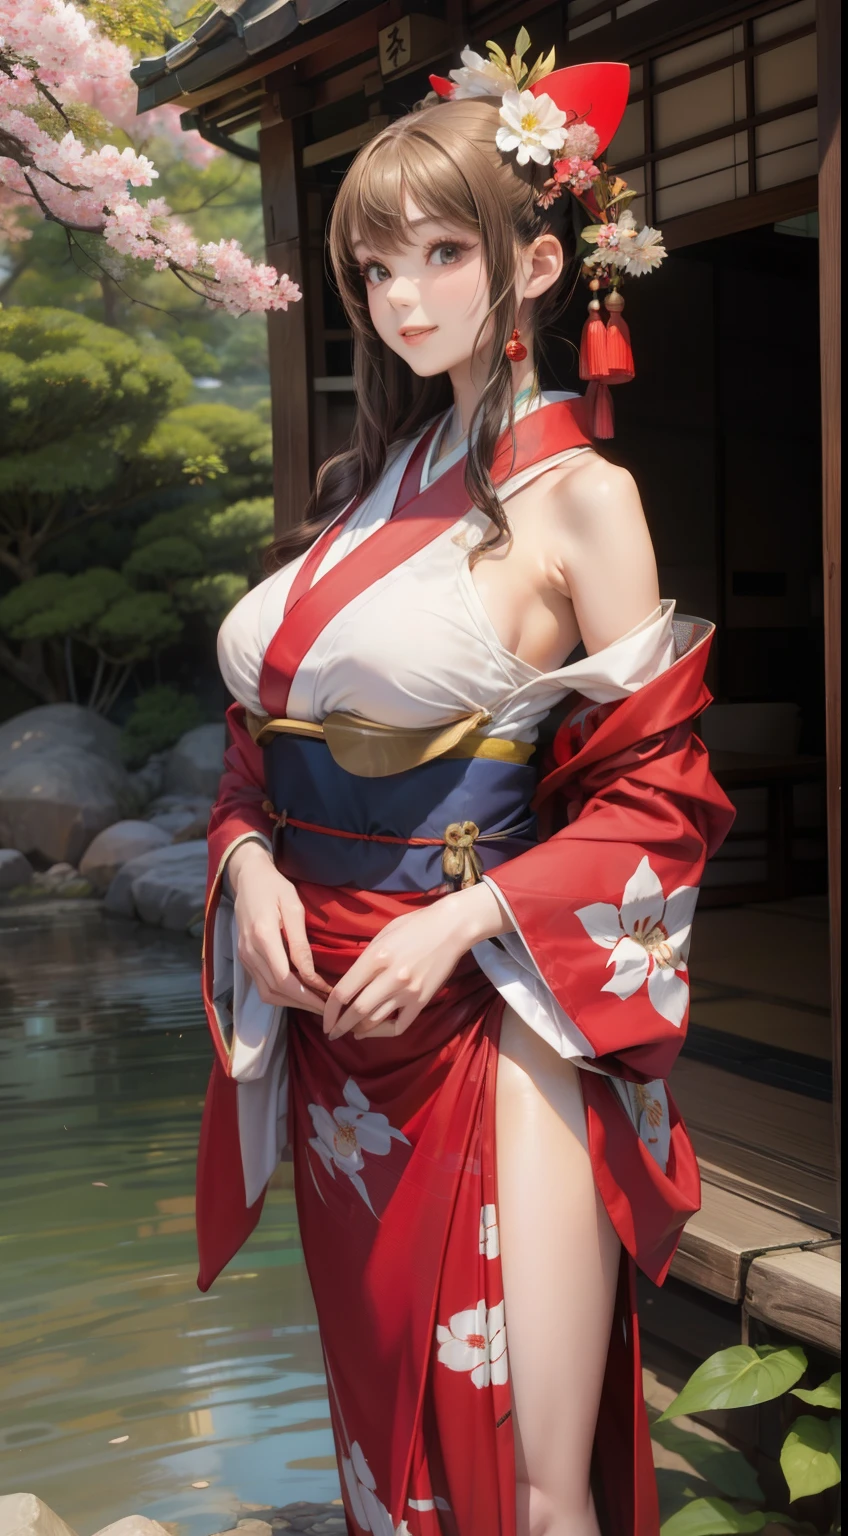 Extérieur、jardin japonais、Jeune femme portant un kimono、gros seins、mince、Belle fille de deuxième dimension、Figure parfaite、Beauté parfaite、sourire